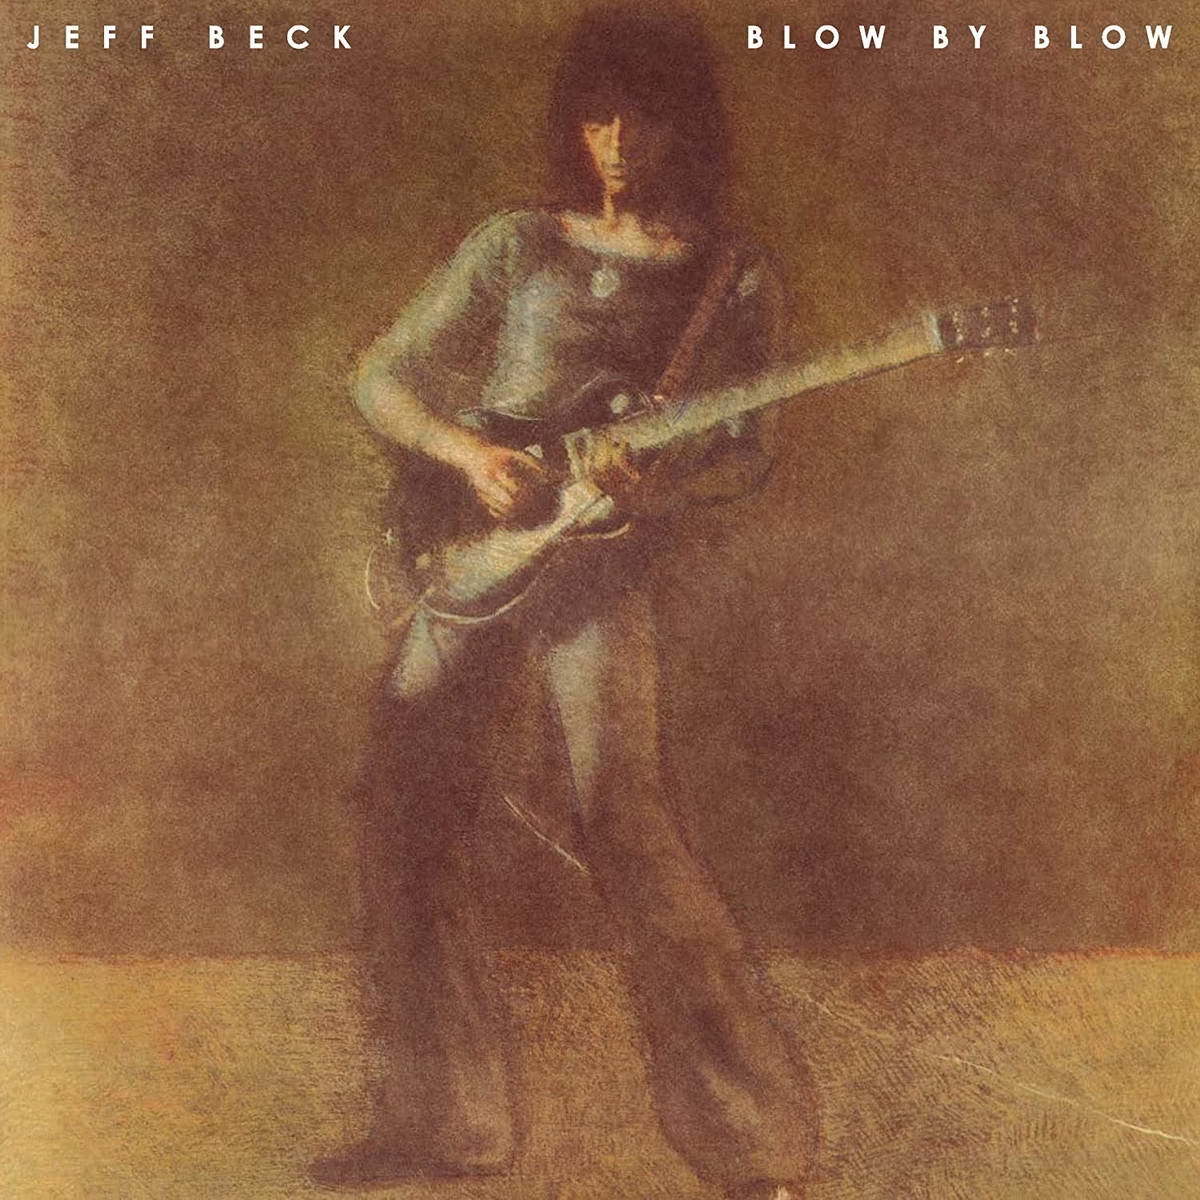 Виниловая пластинка Beck, Jeff, Blow By Blow (0886977455513) виниловая пластинка jeff beck – blow by blow lp